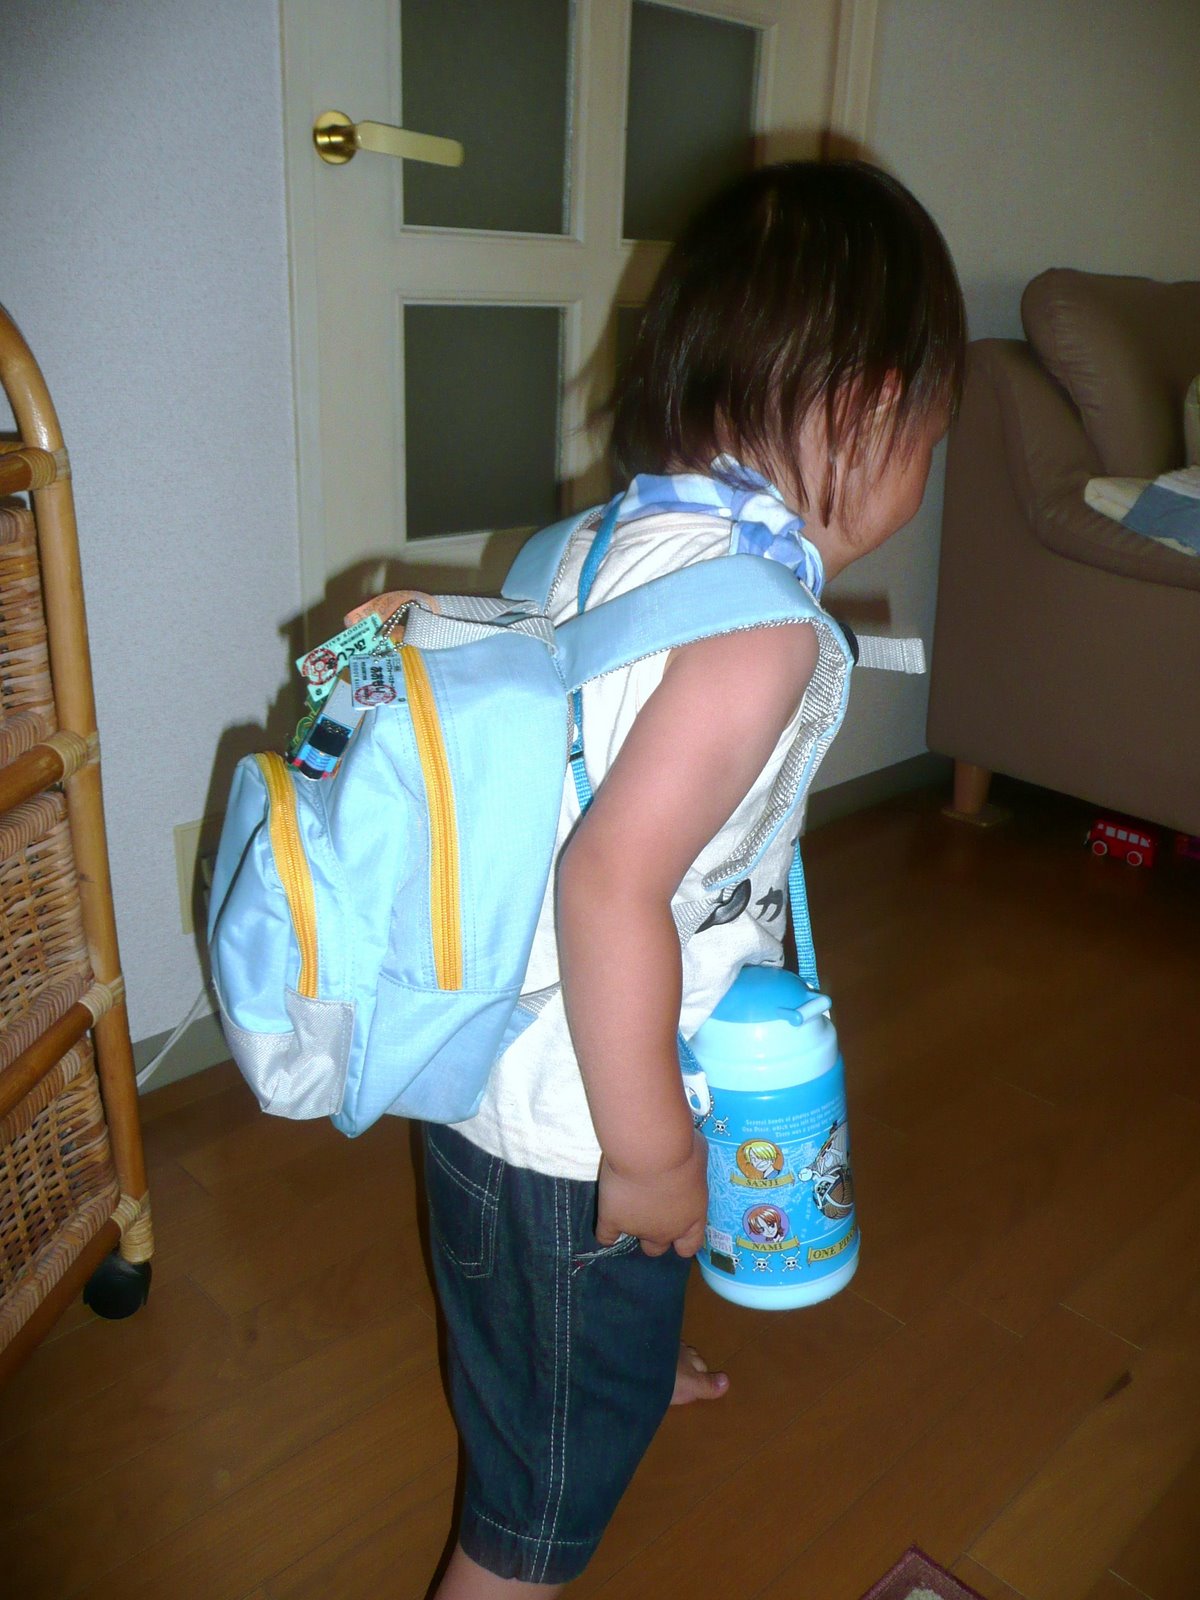 [Jidai+and+backpack+July+8,+2008.JPG]